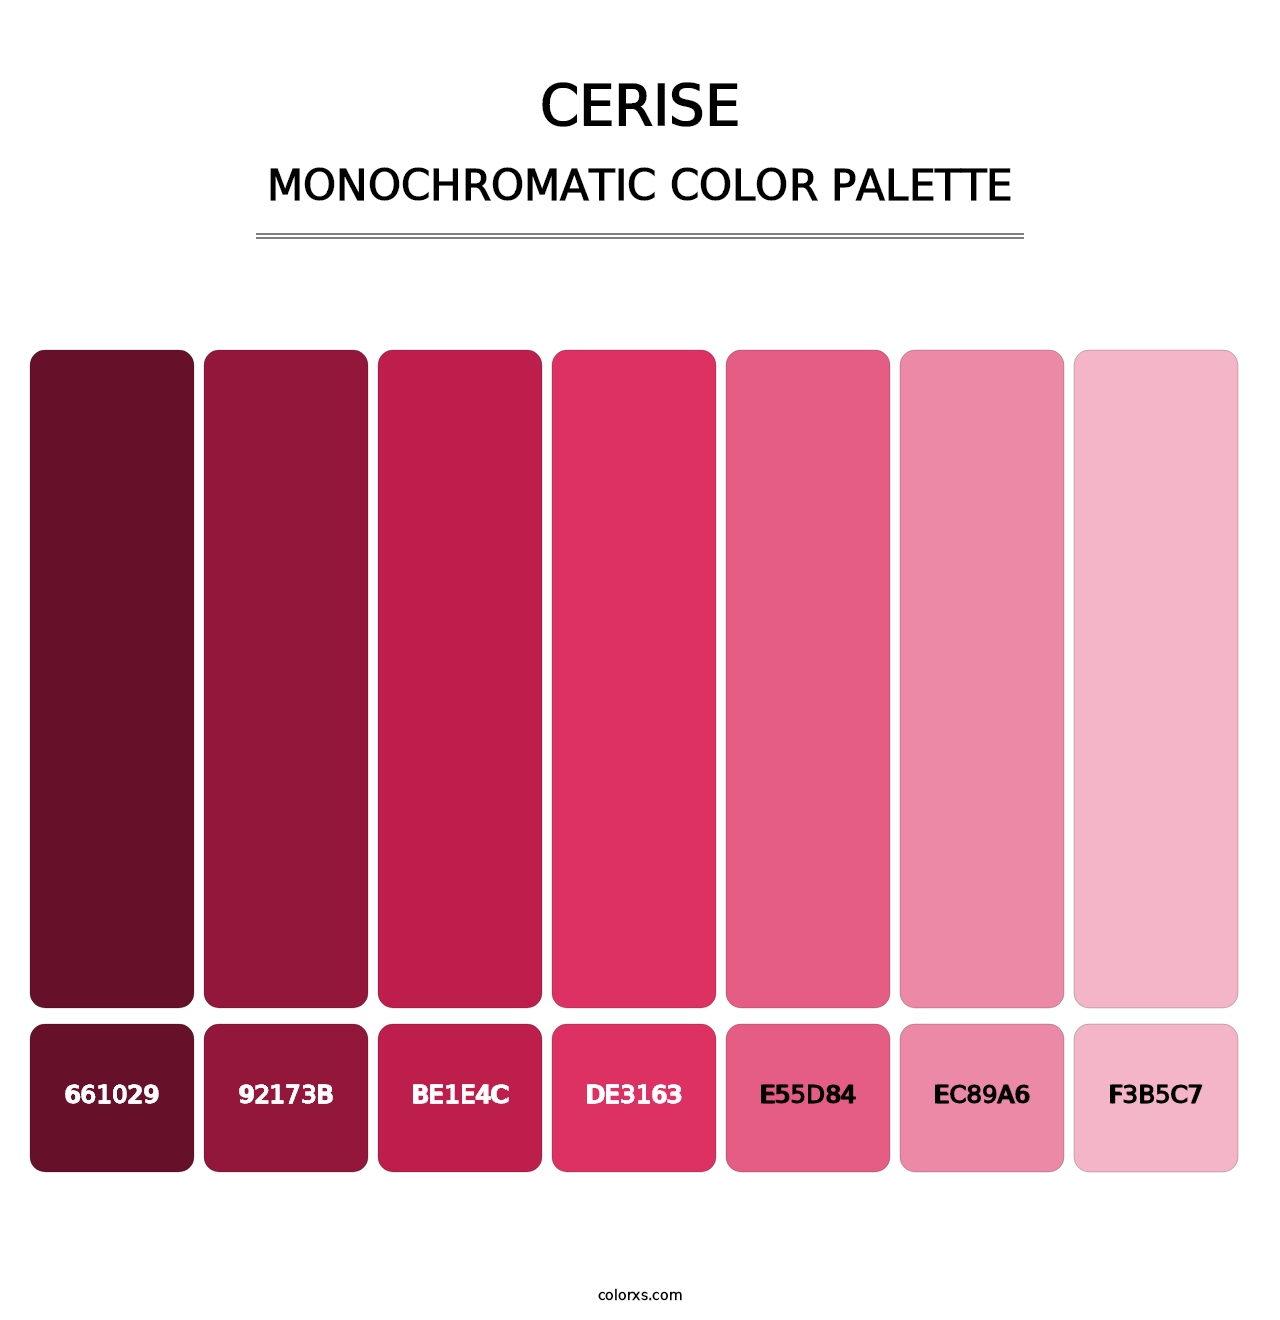 Cerise - Monochromatic Color Palette